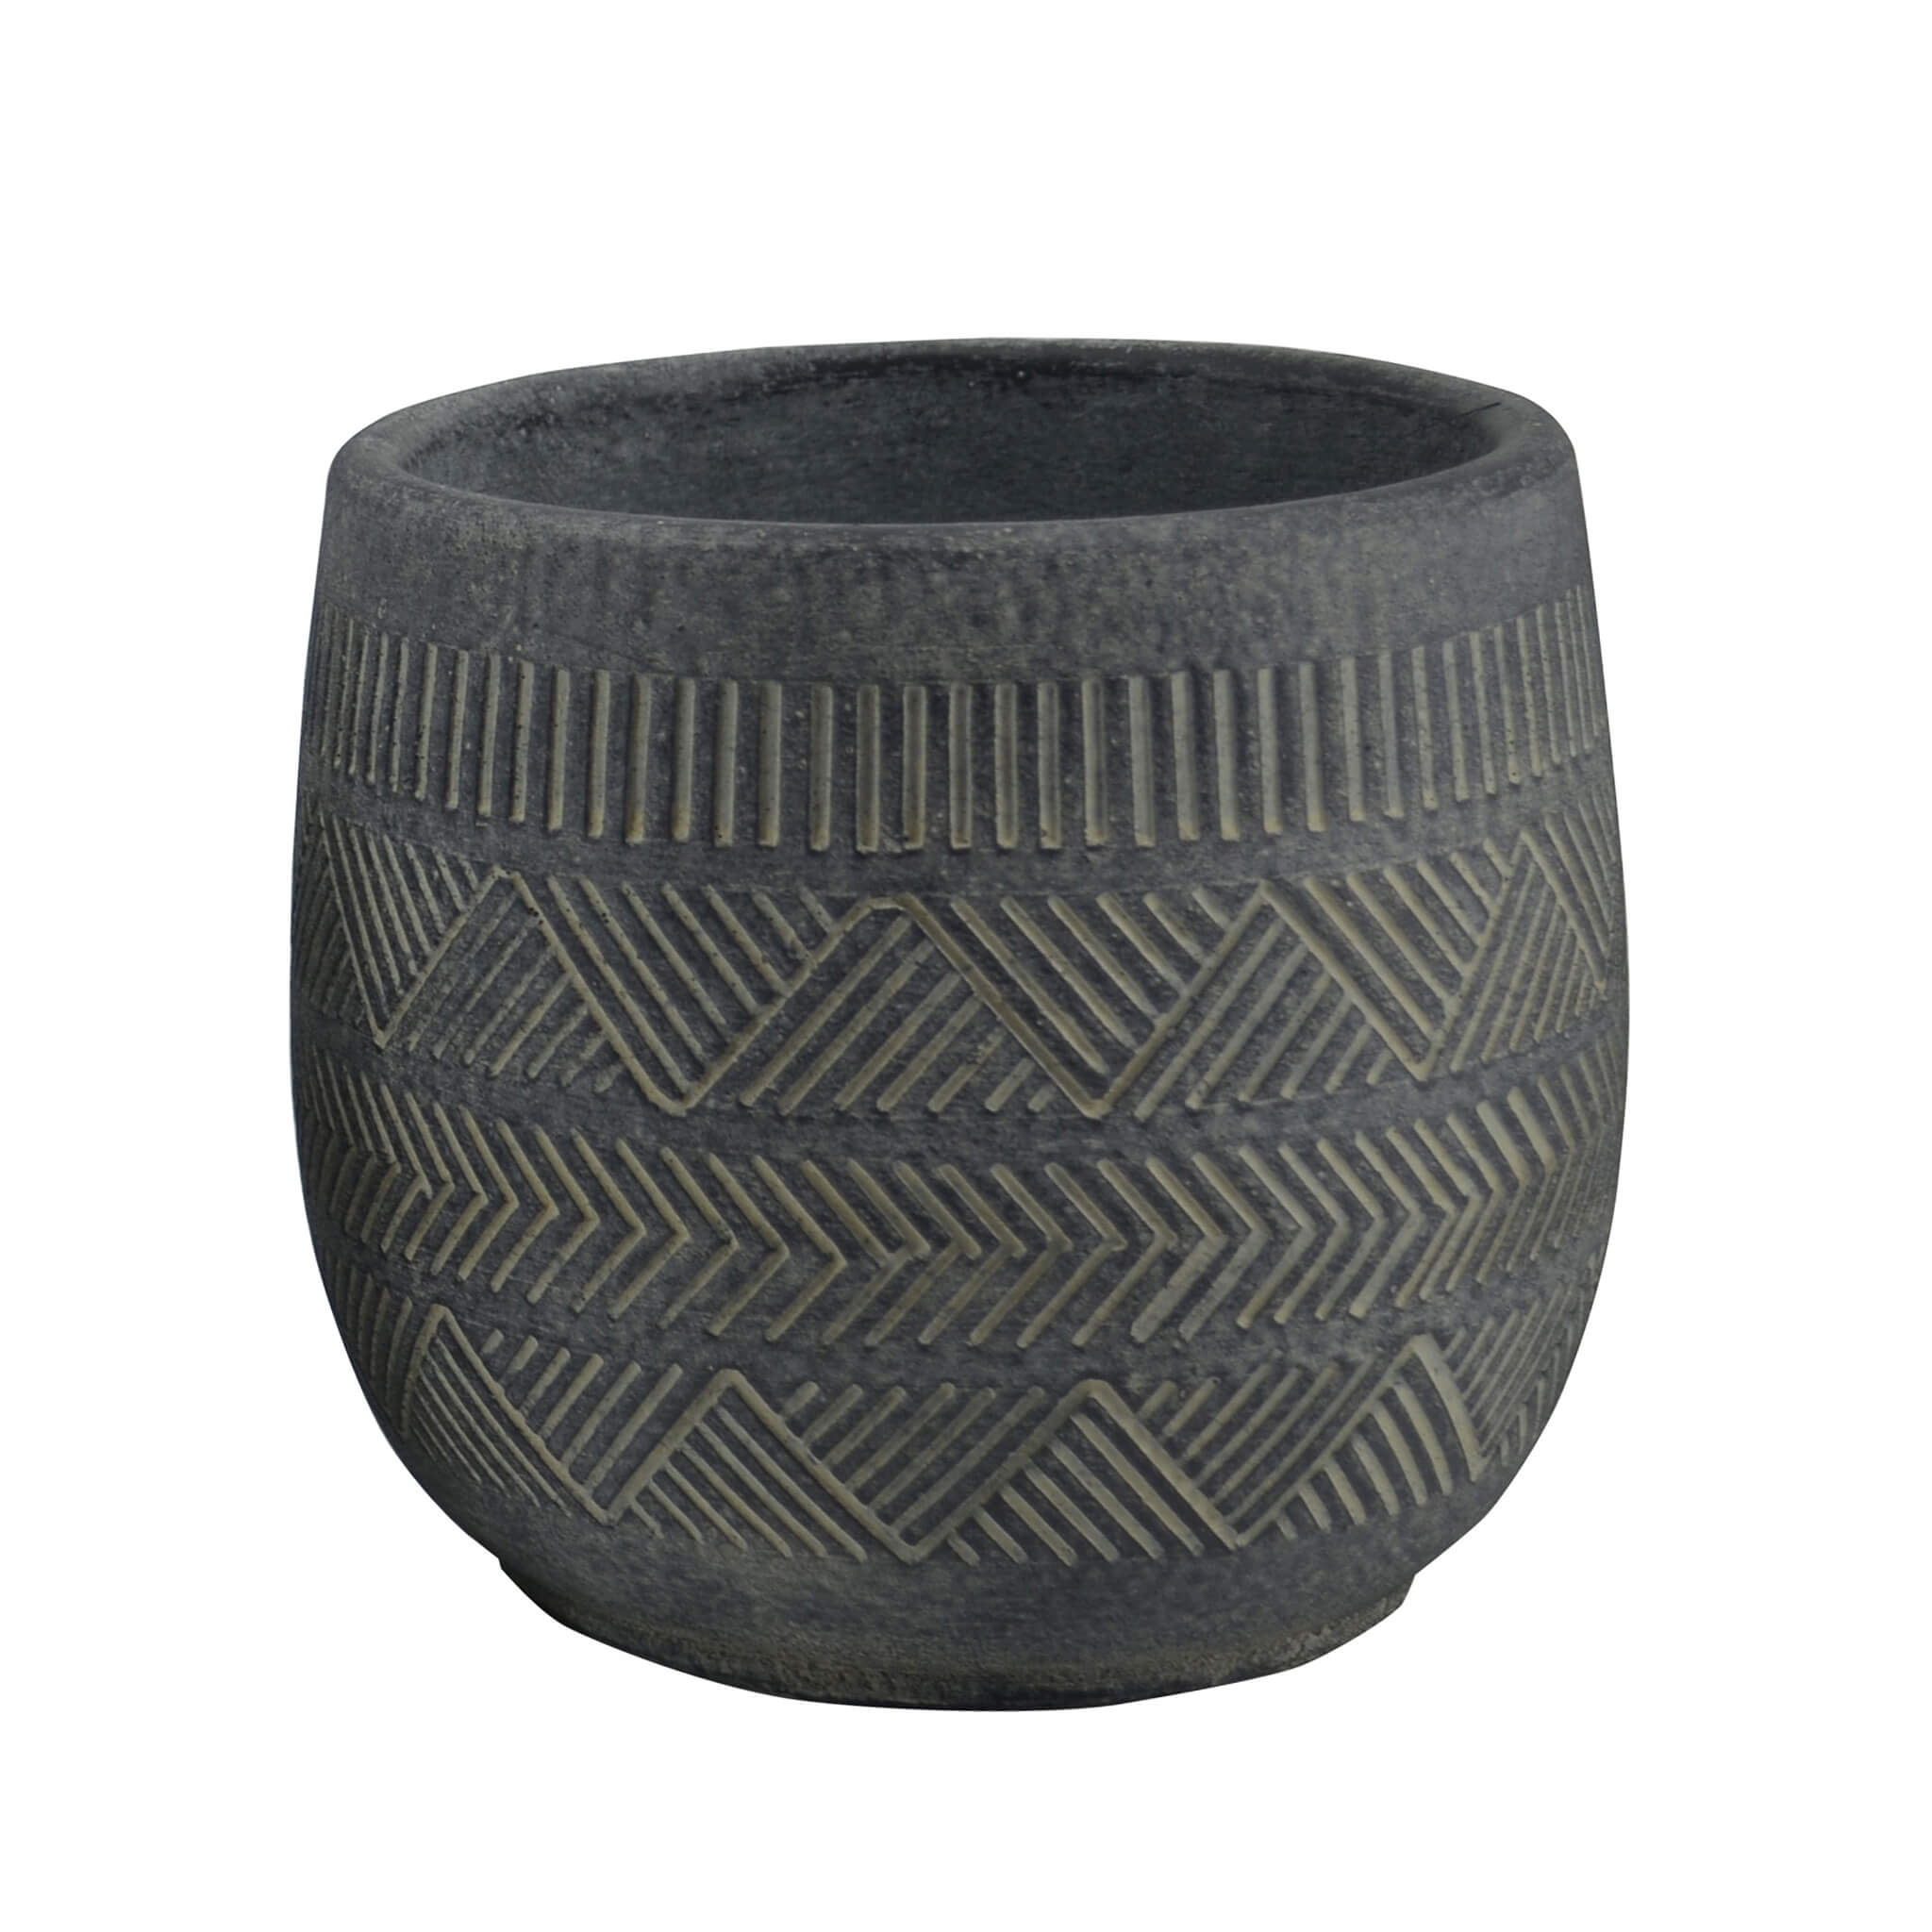 Milani Home vaso in fibra sintetica di design moderno industrial cm 17,8 x 17,8 x 16 h Antracite 18 x 16 x 18 cm